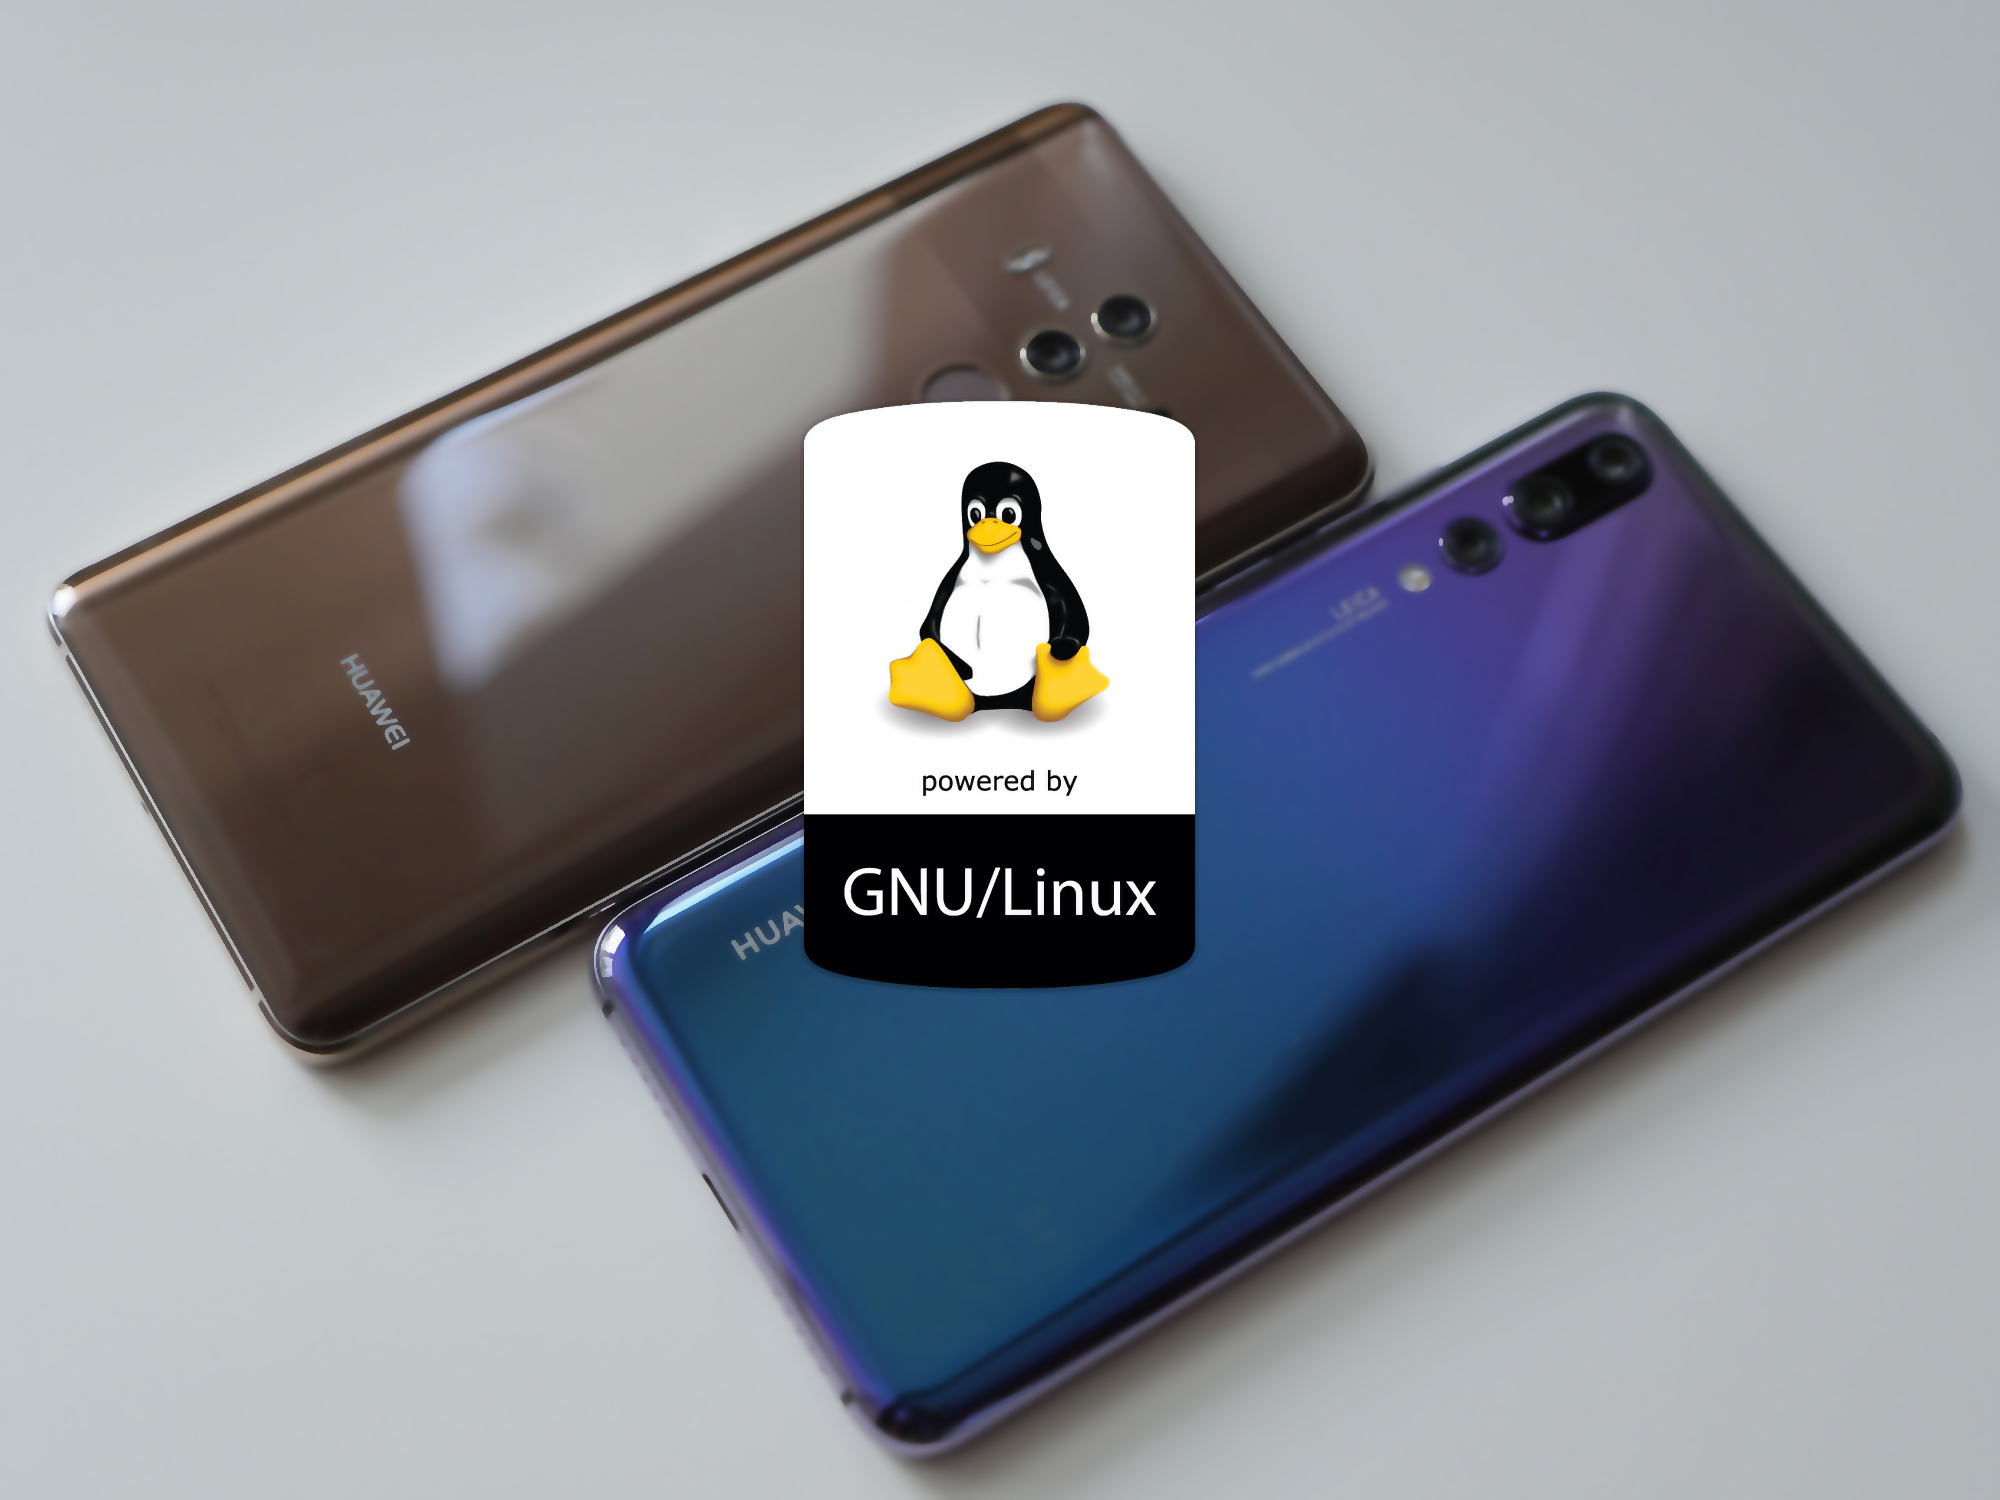 EROFS de Huawei se fusionará con el kernel de Linux 4.19